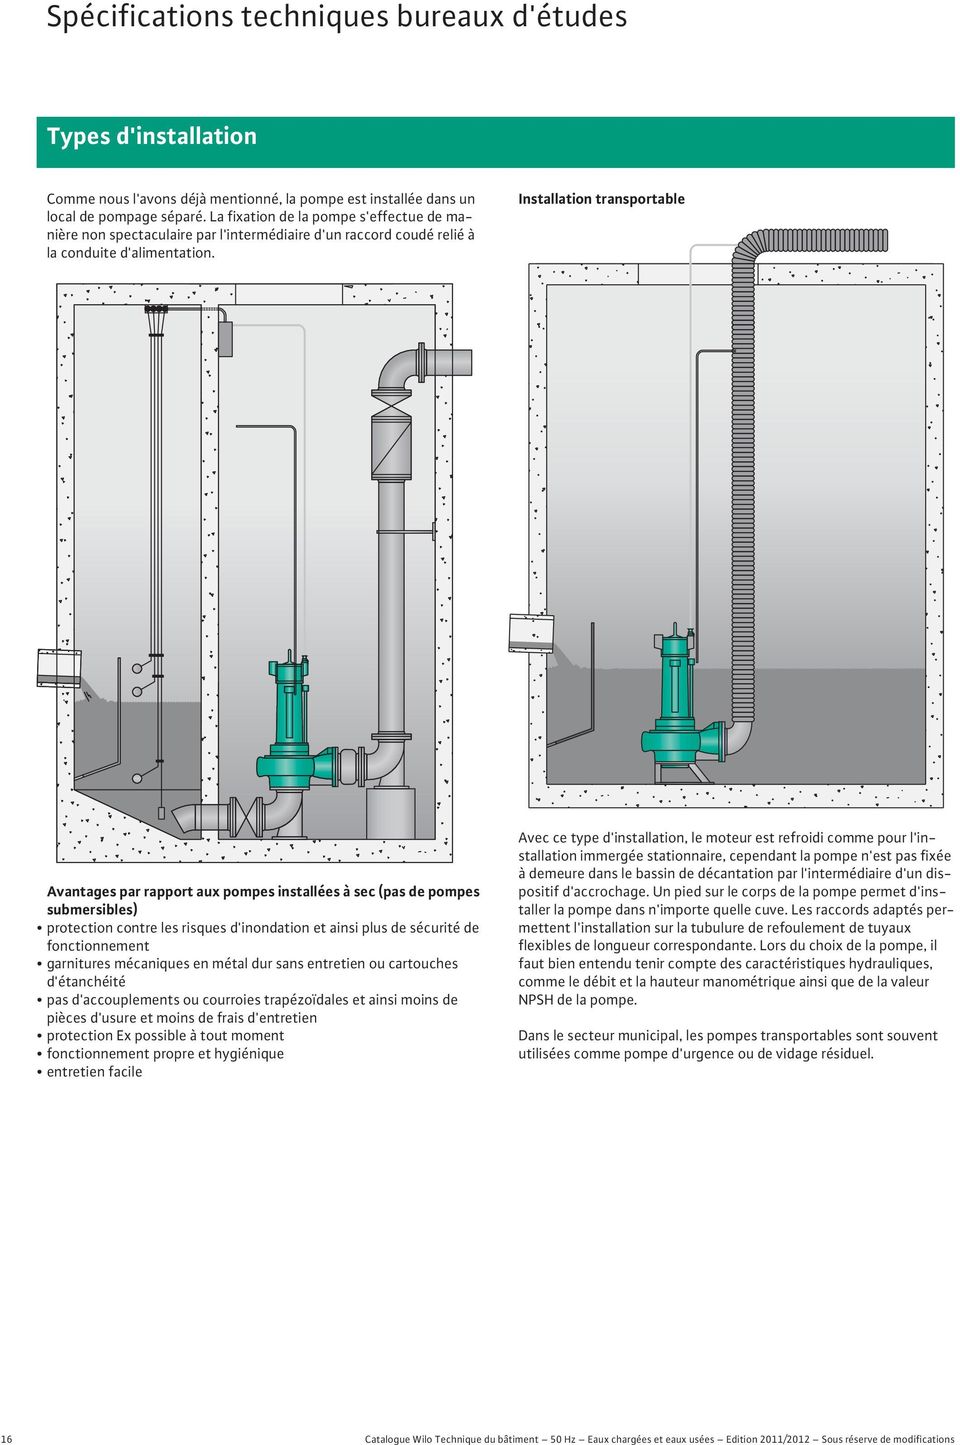 Installation transportable Avantages par rapport aux pompes installées à sec (pas de pompes submersibles) protection contre les risques d'inondation et ainsi plus de sécurité de fonctionnement